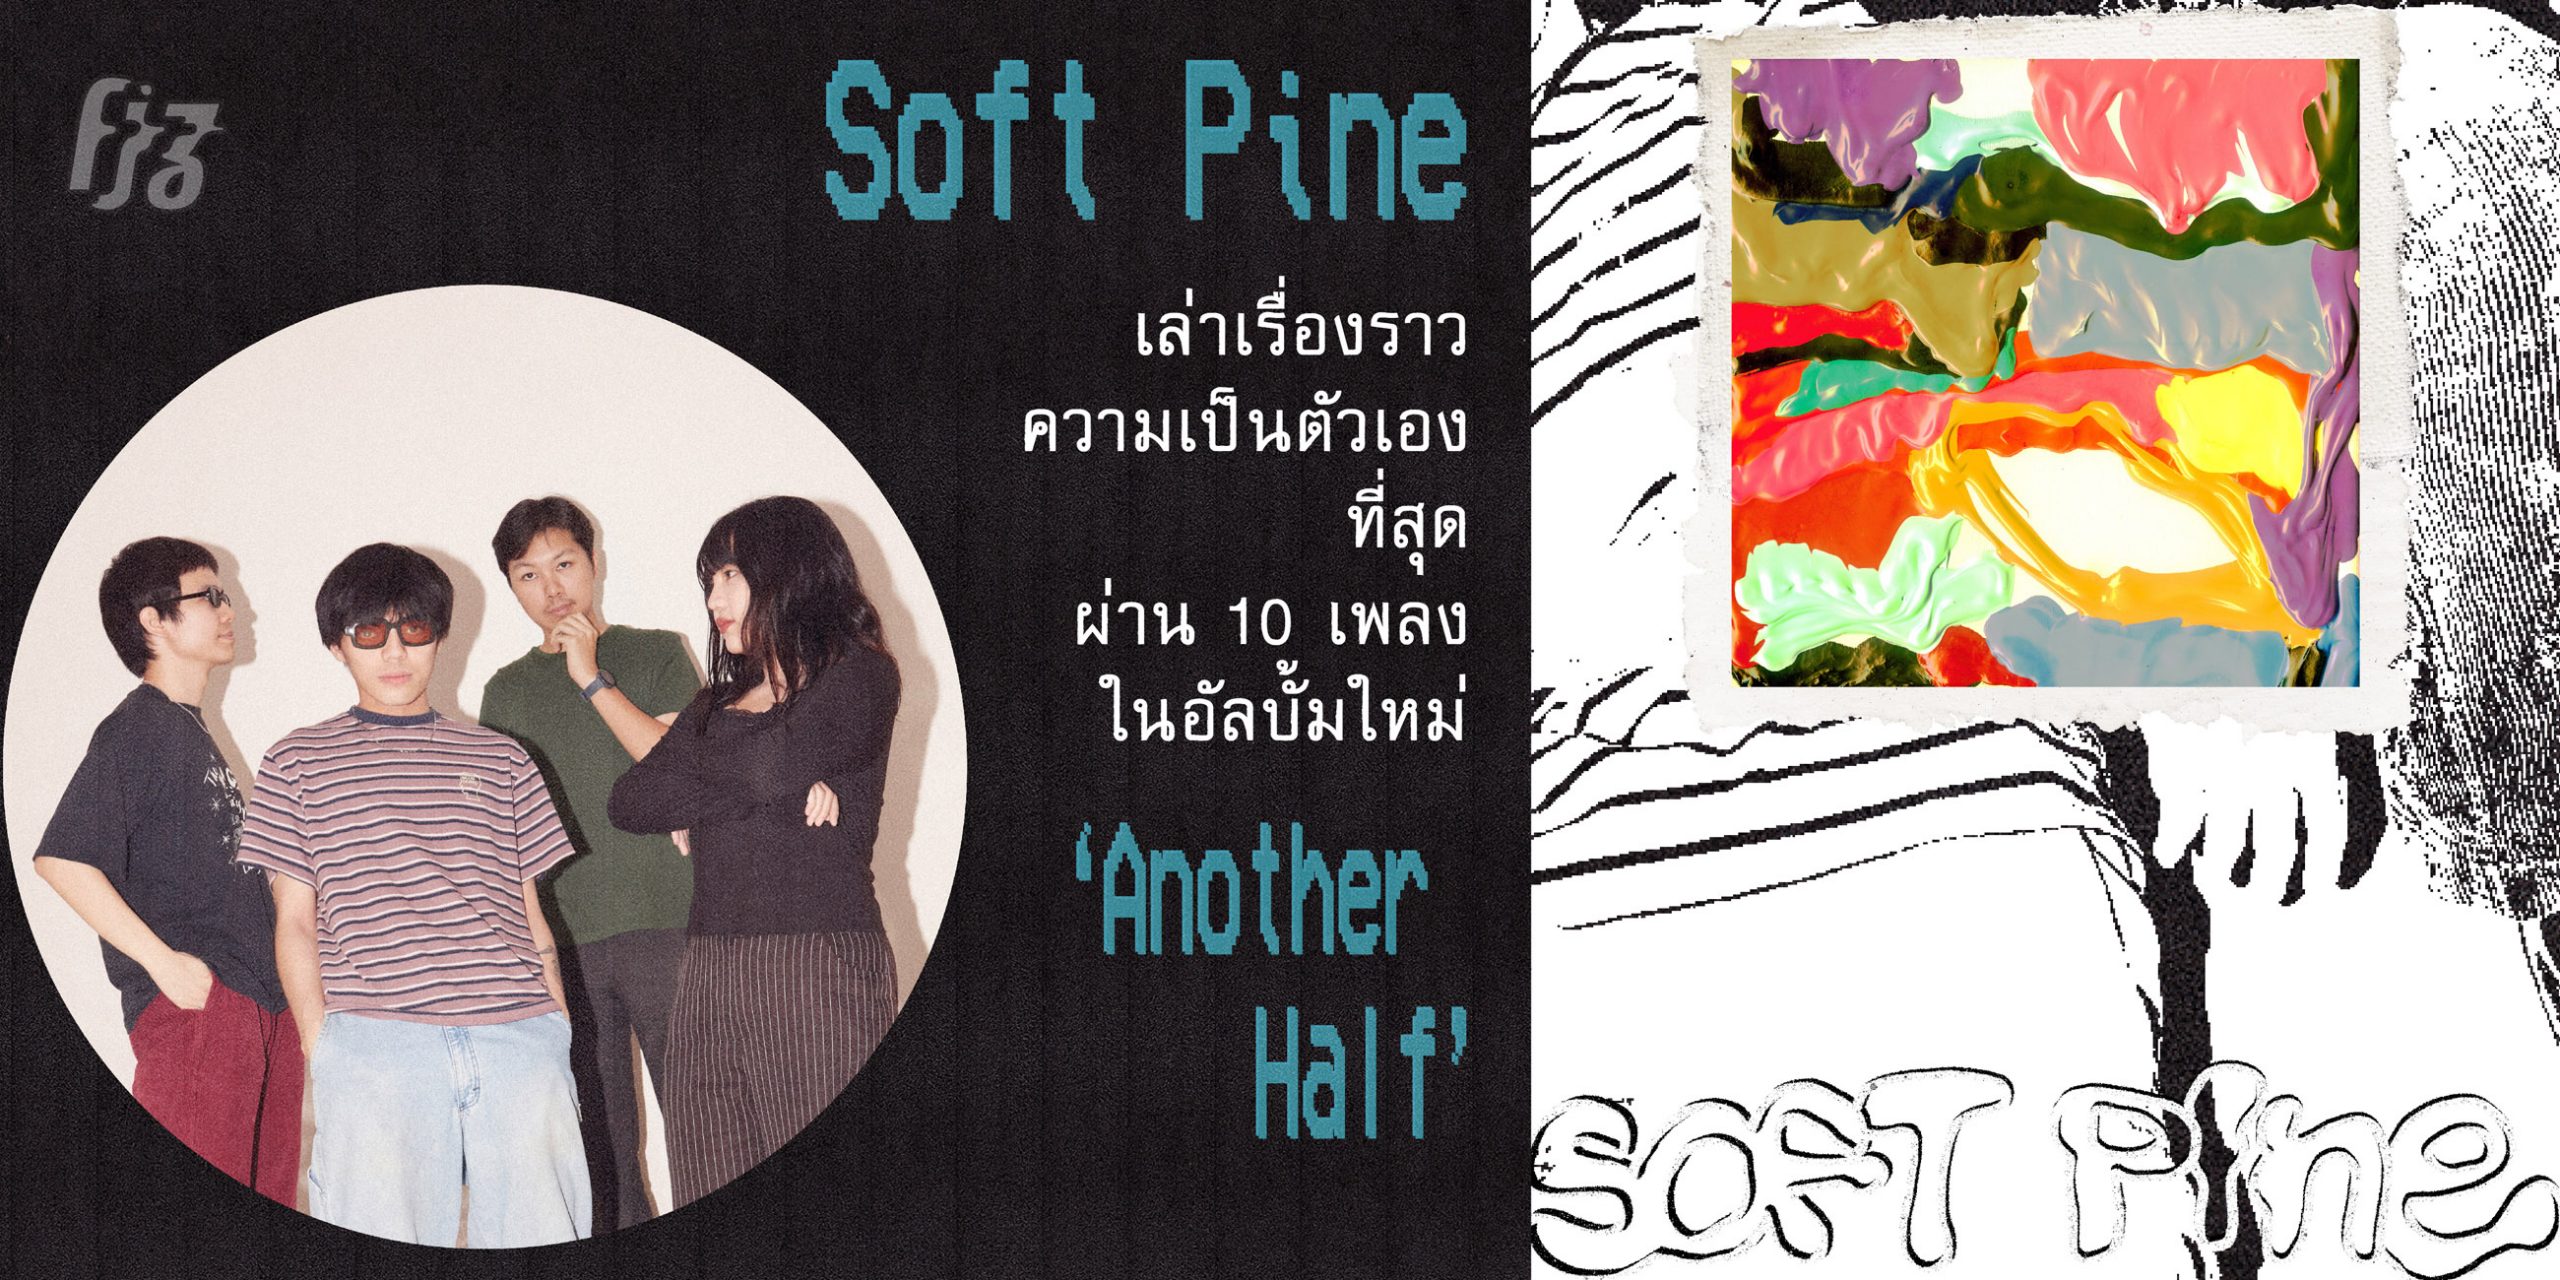 Soft Pine เล่าเรื่องราวความเป็นตัวเองที่สุดผ่าน 10 เพลง ในอัลบั้มใหม่ ‘Another Half’ 